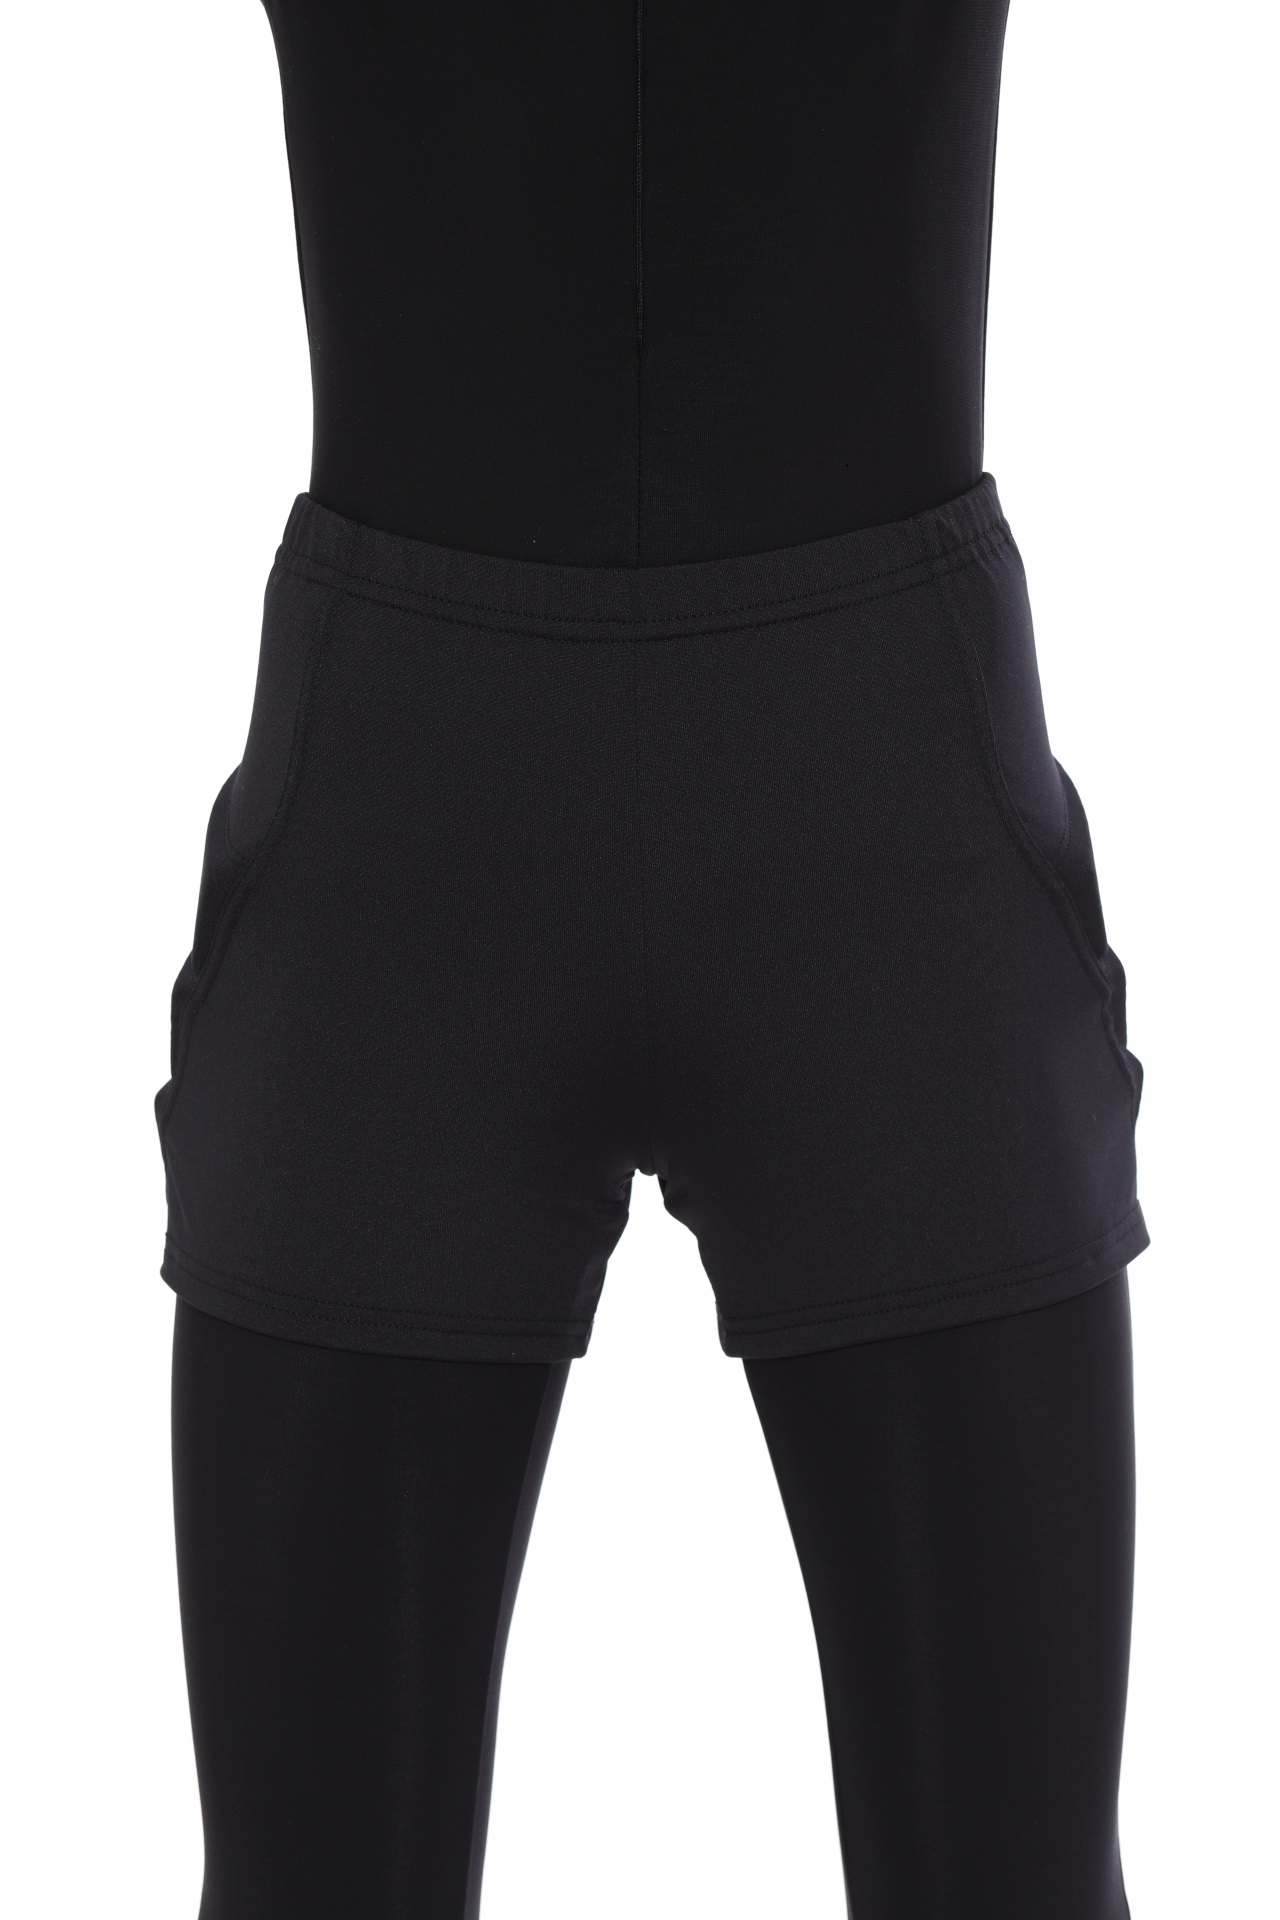 Защитные шорты для фигурного катания и роликов Chersa, цвет: черный 158-164